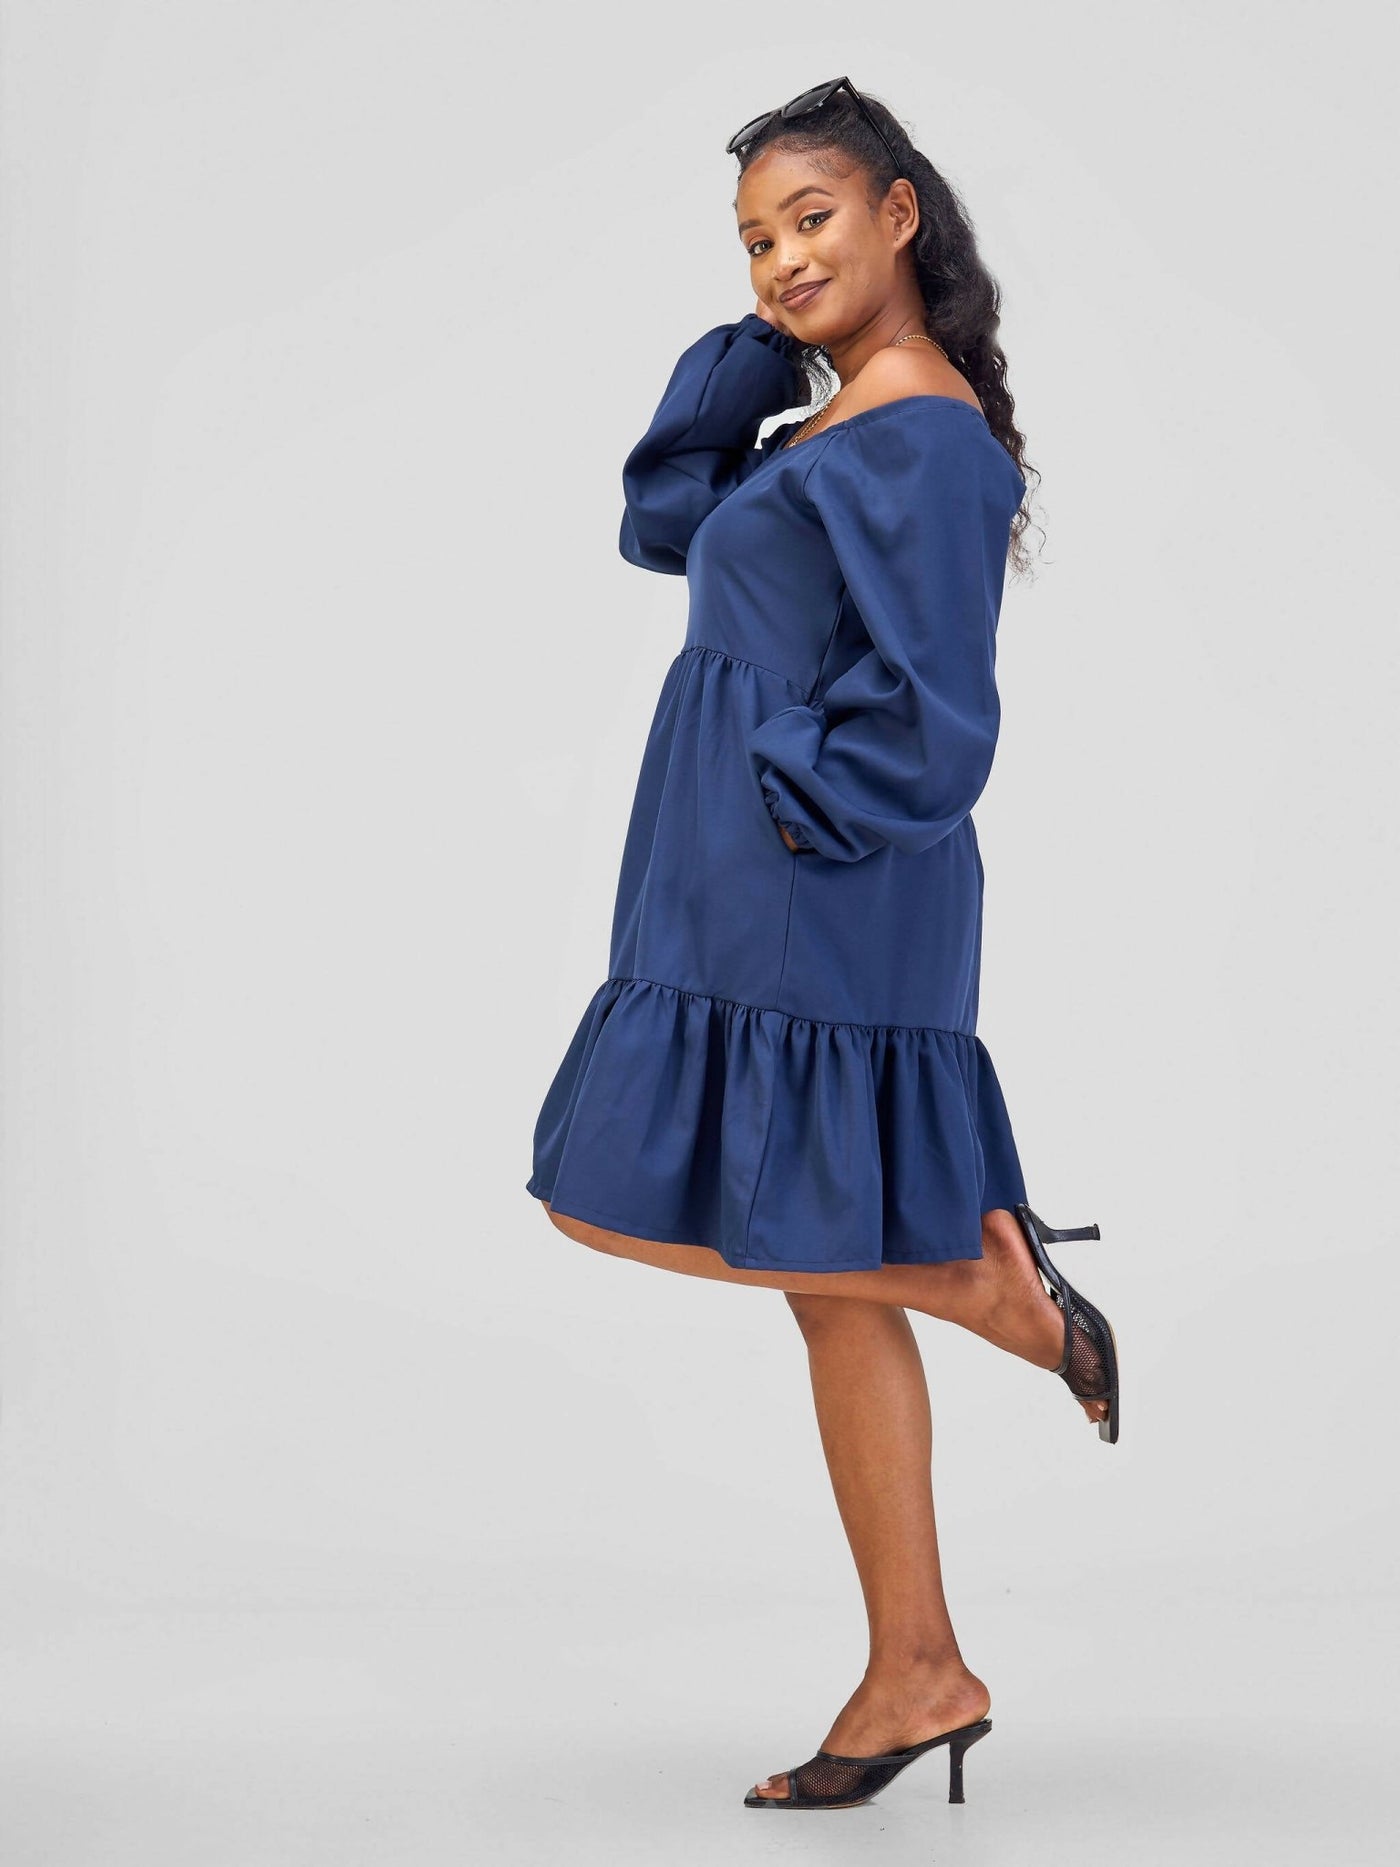 Steady Wear Natalie Dress - Navy Blue - Shopzetu